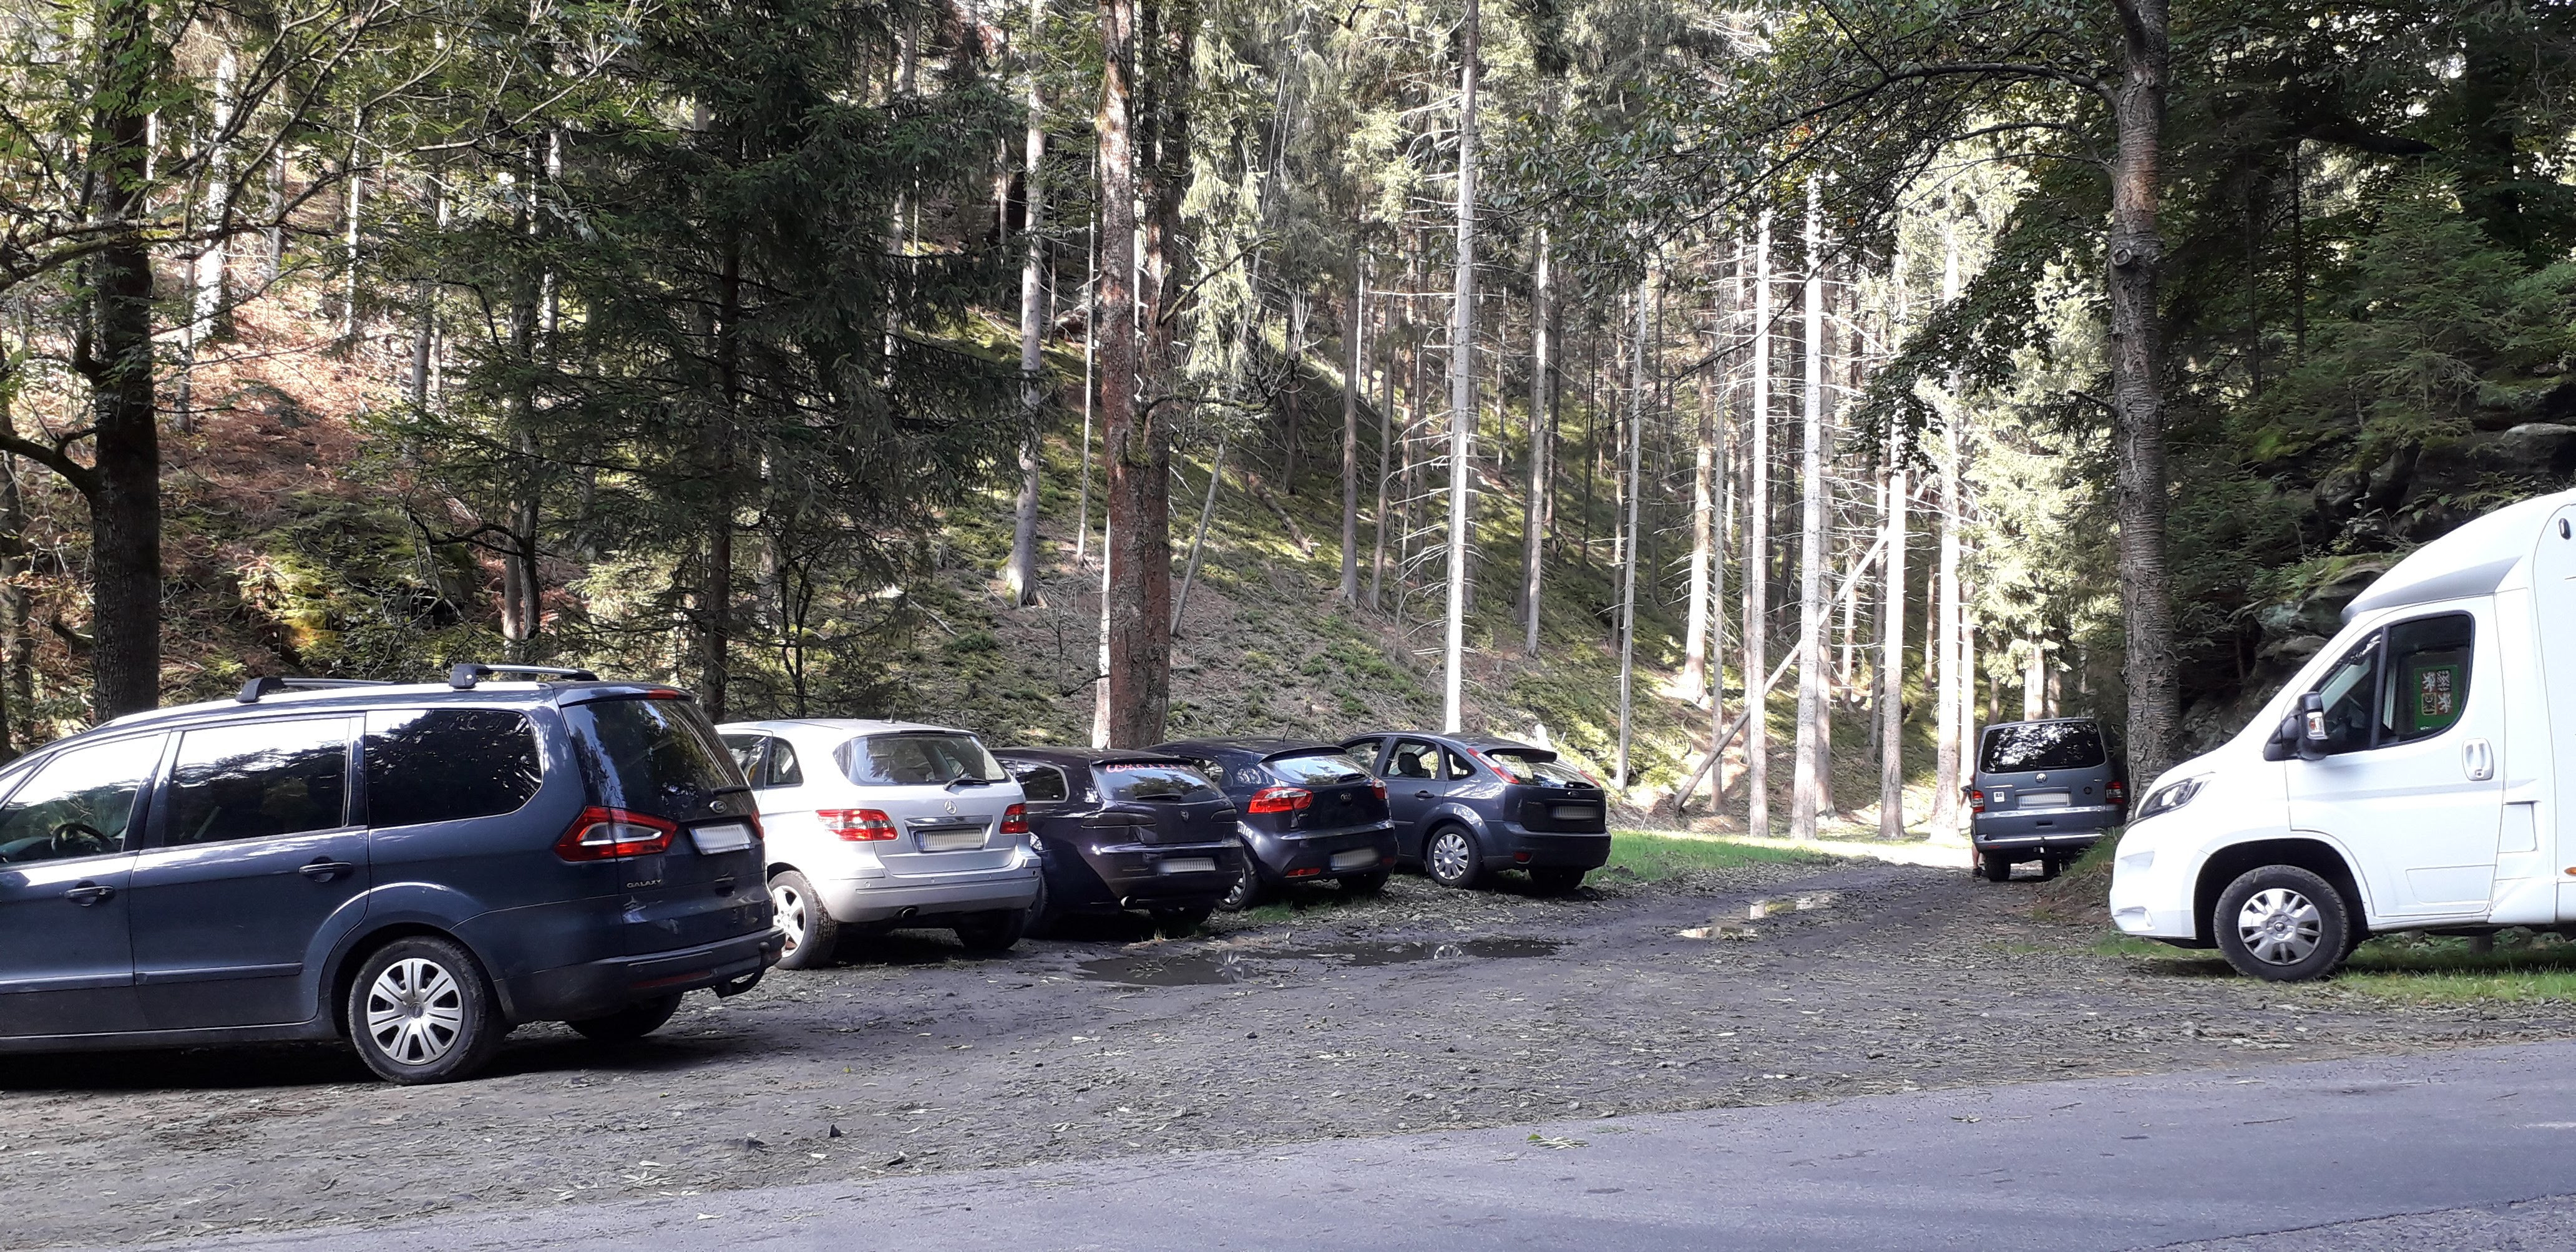 Častý obrázek v hlavní turistické sezóně: Automobily parkující na nesprávných místech. Foto: Tomáš Salov 